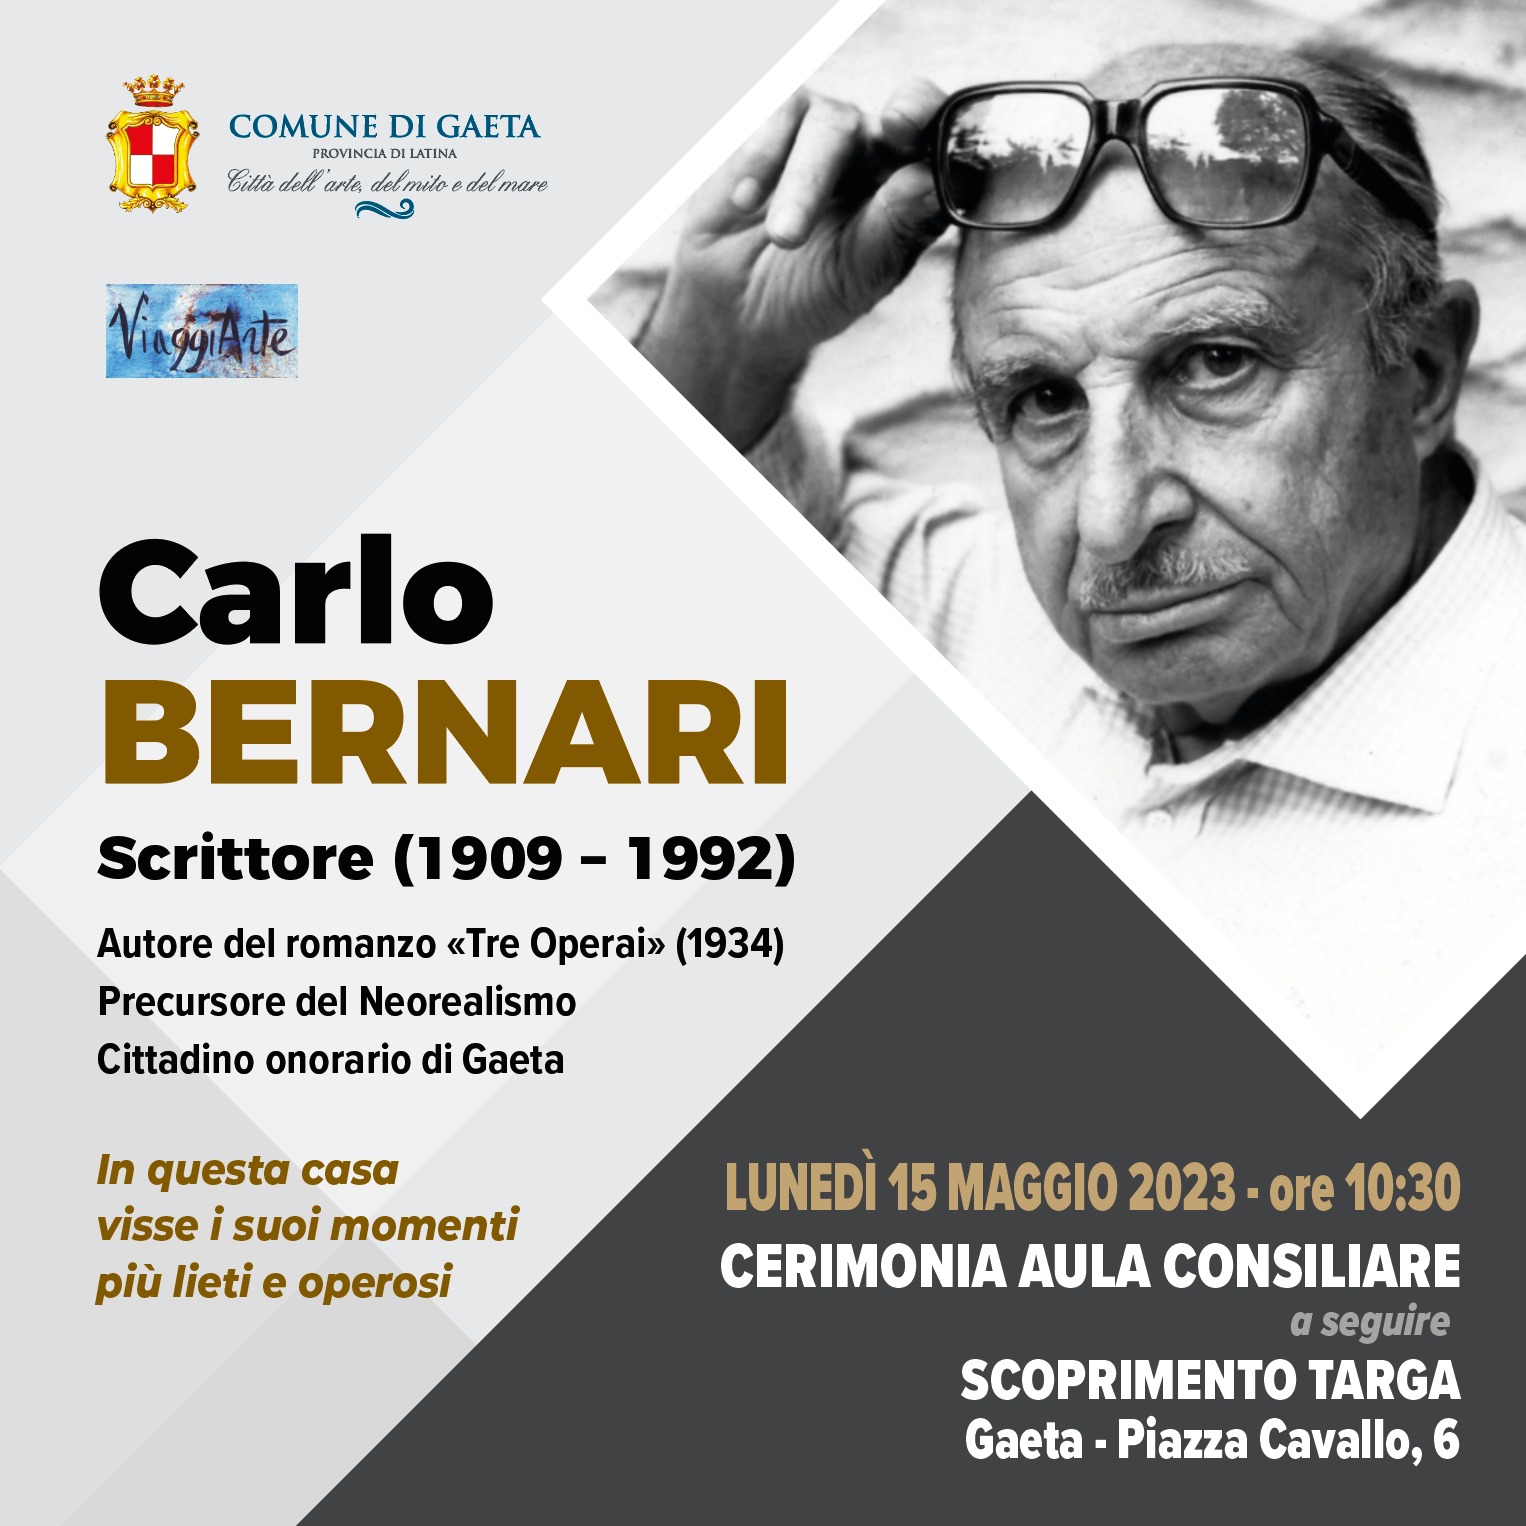 Carlo Bernari, una targa in memoria del precursore del Neorealismo e cittadino onorario di Gaeta